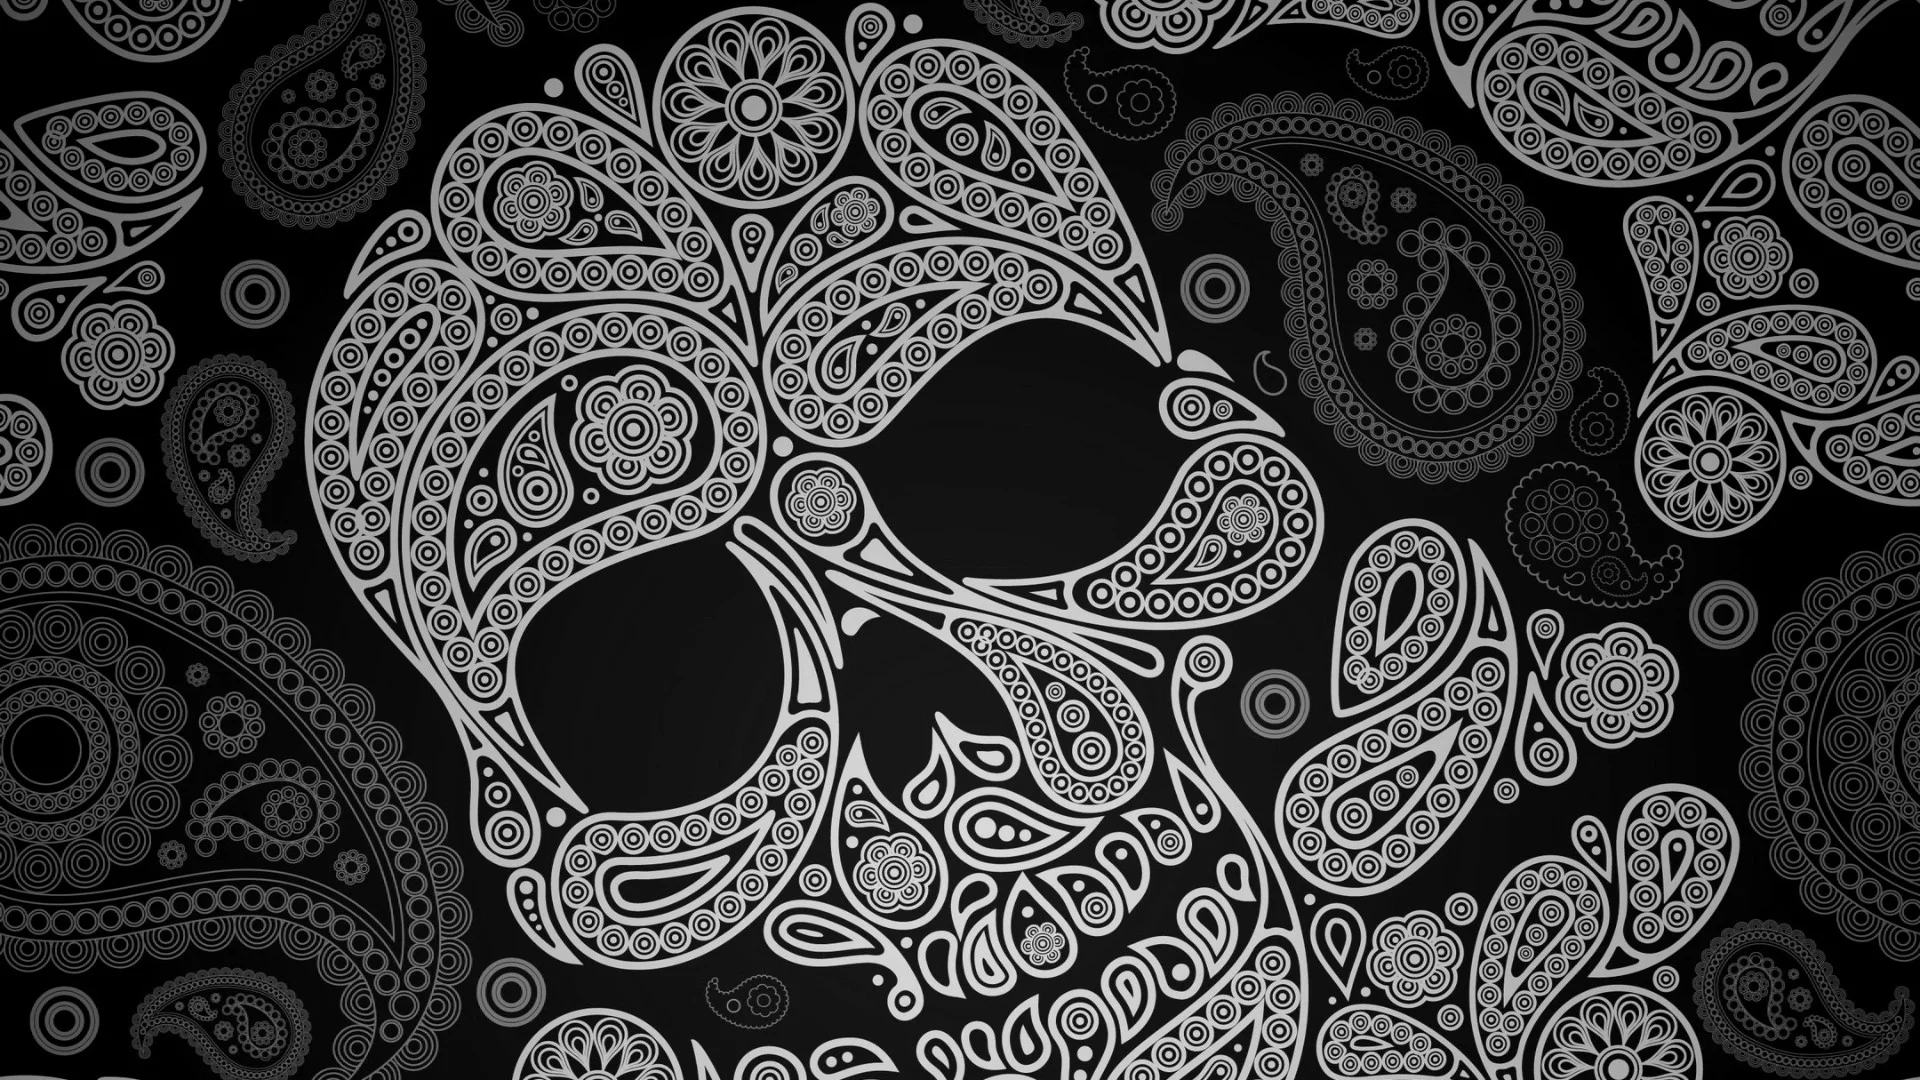 Related pictures girly skull wallpaper girly skull desktop background